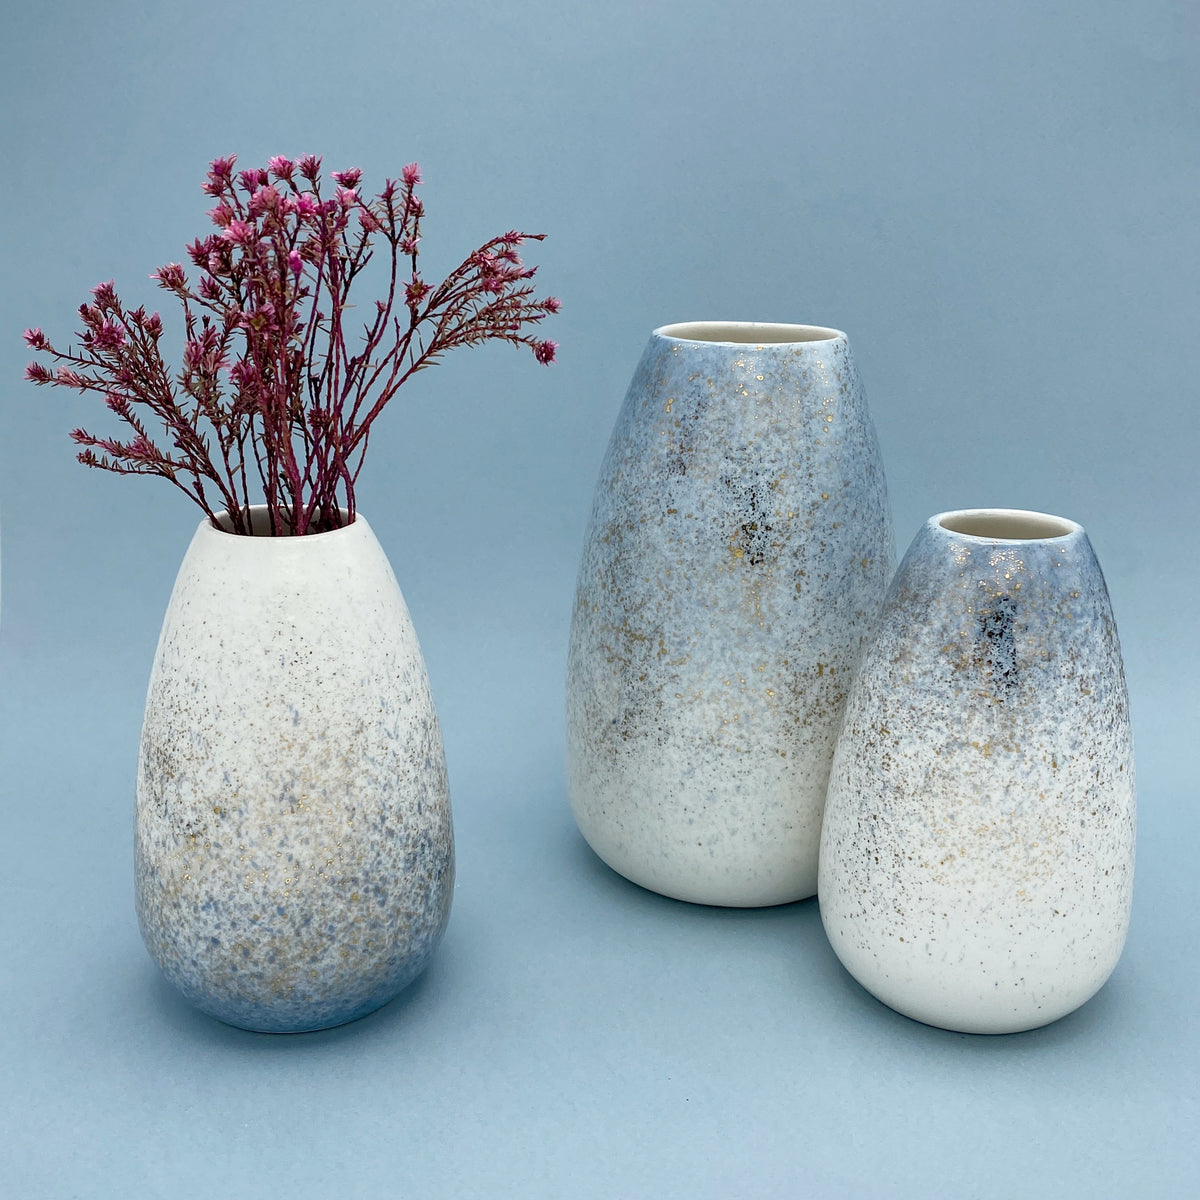 Golden vase, Light Blue - Size M / Gullvasi, Ljósblár